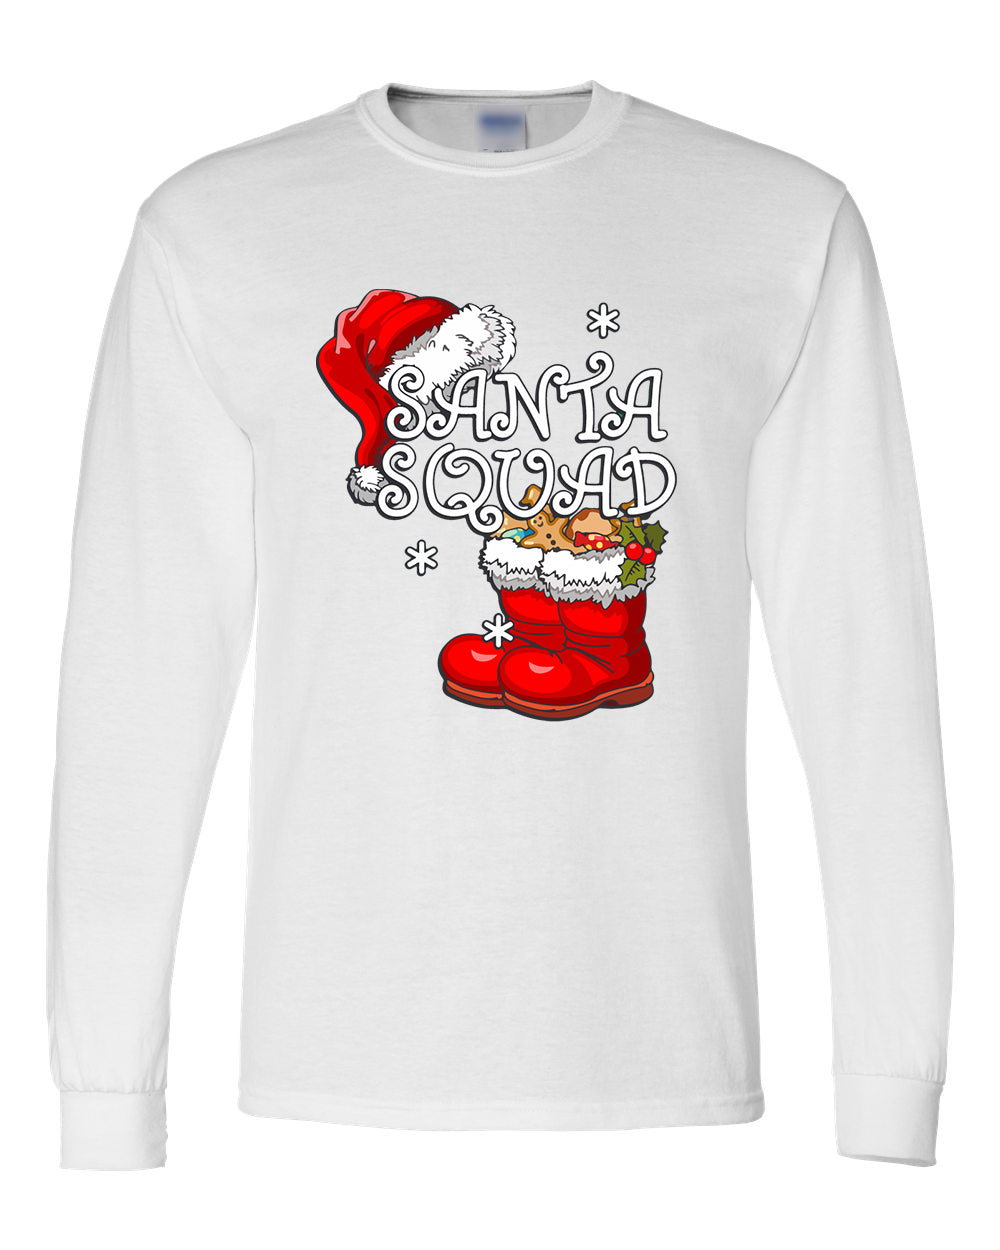 Santa Squad Christmas Long Sleeve Shirt - ApparelinClick